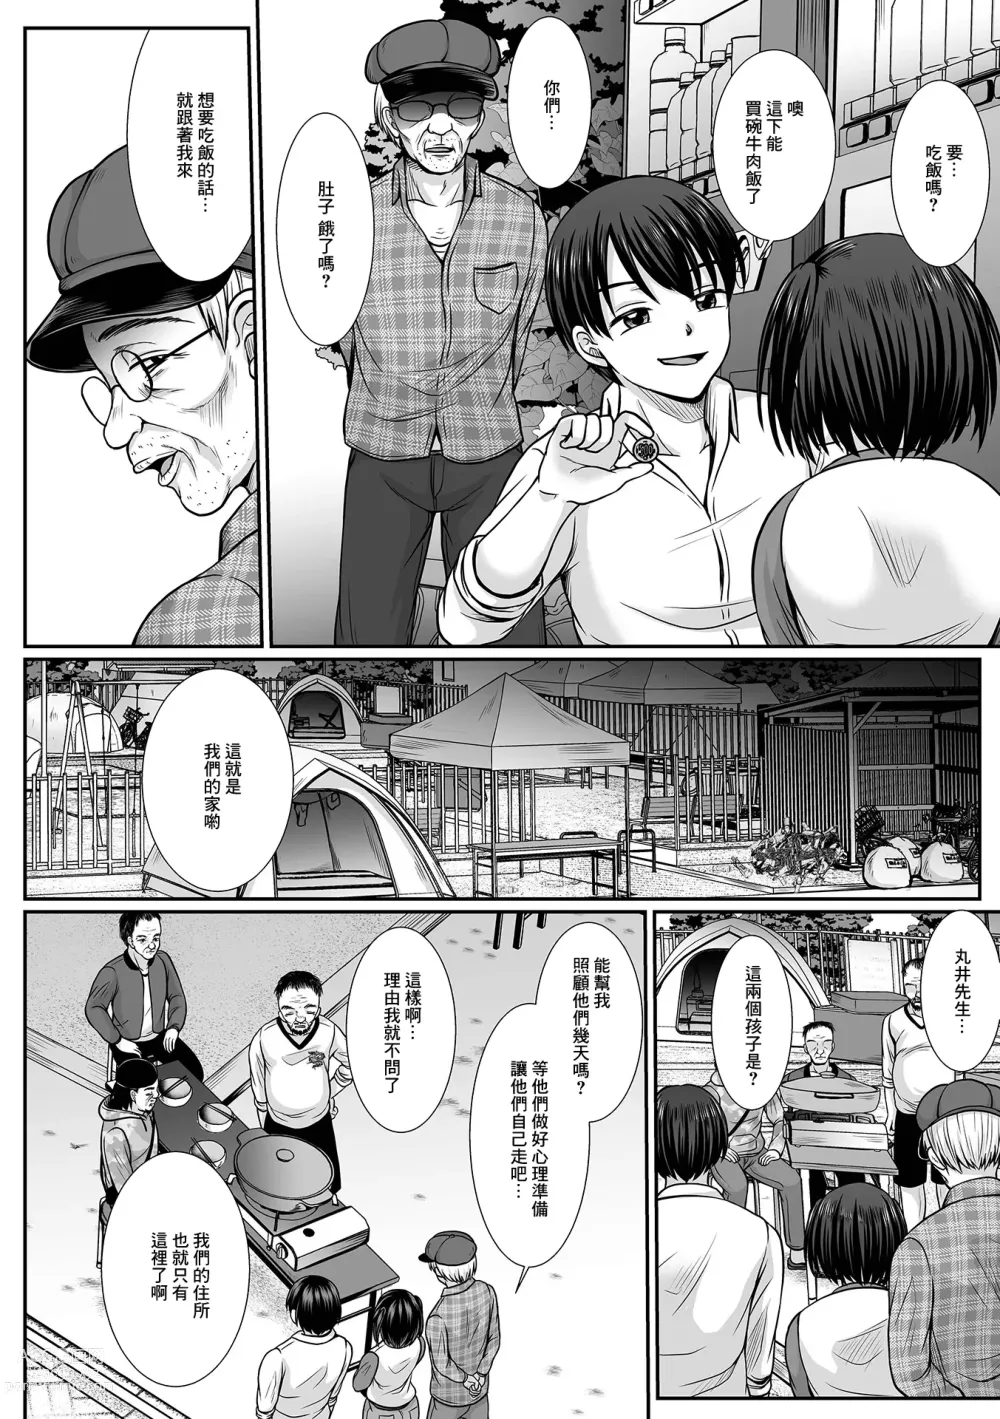 Page 12 of manga Nibiiro ni Shizumu Dai 5-bu Chikage no Mirai Hen